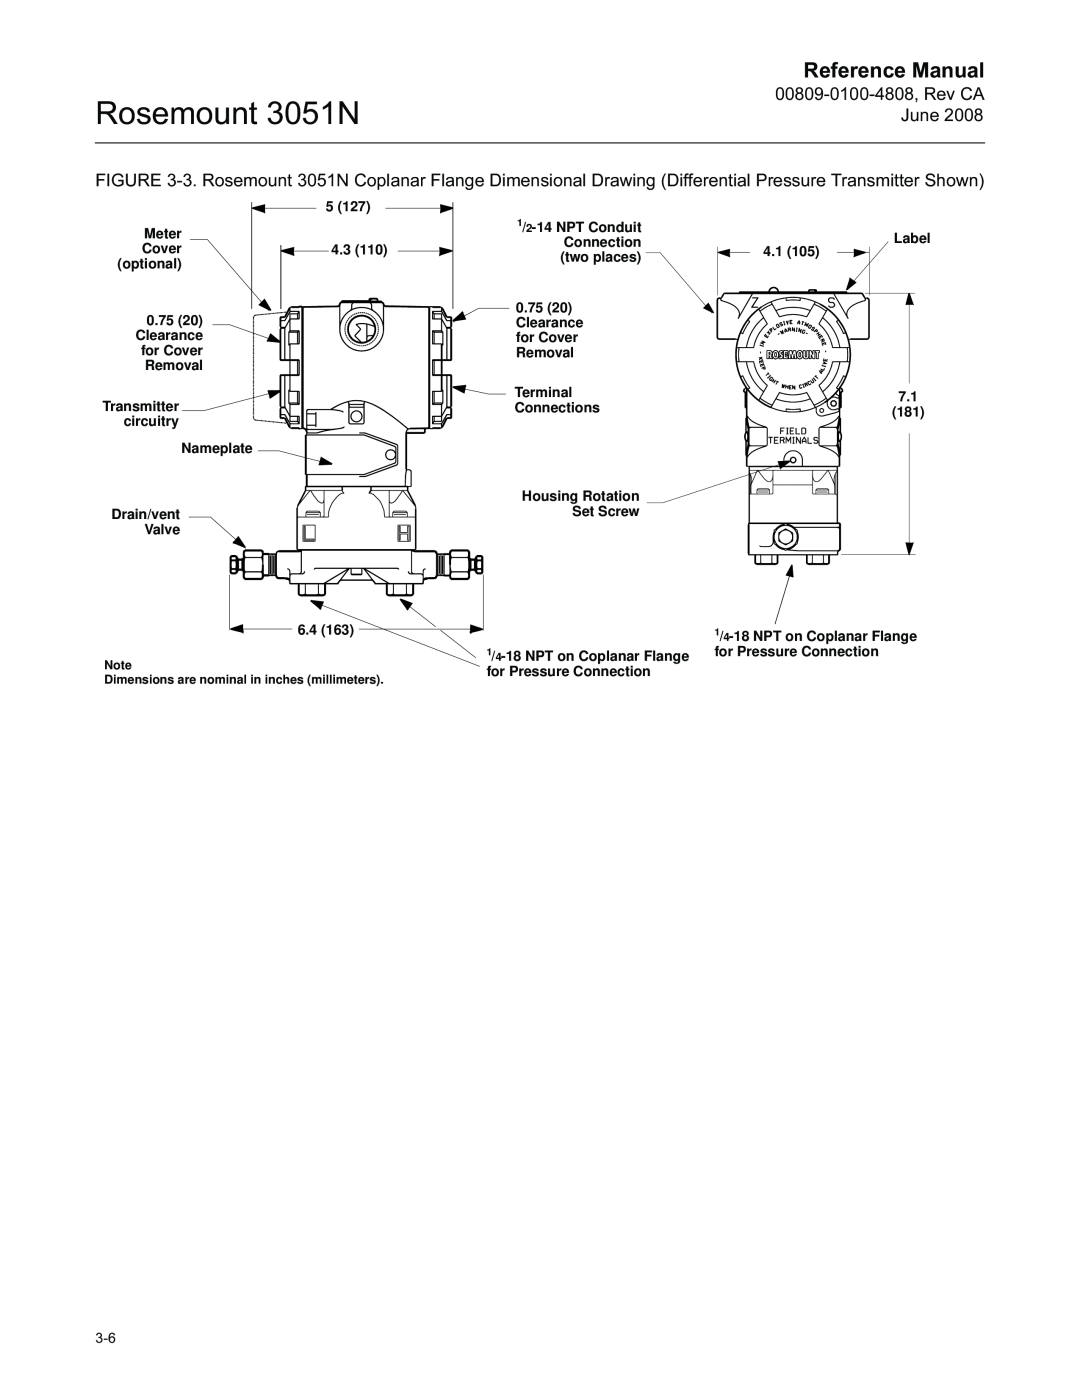 Emerson manual Rosemount 3051N, Reference Manual, 00809-0100-4808,Rev CA June 